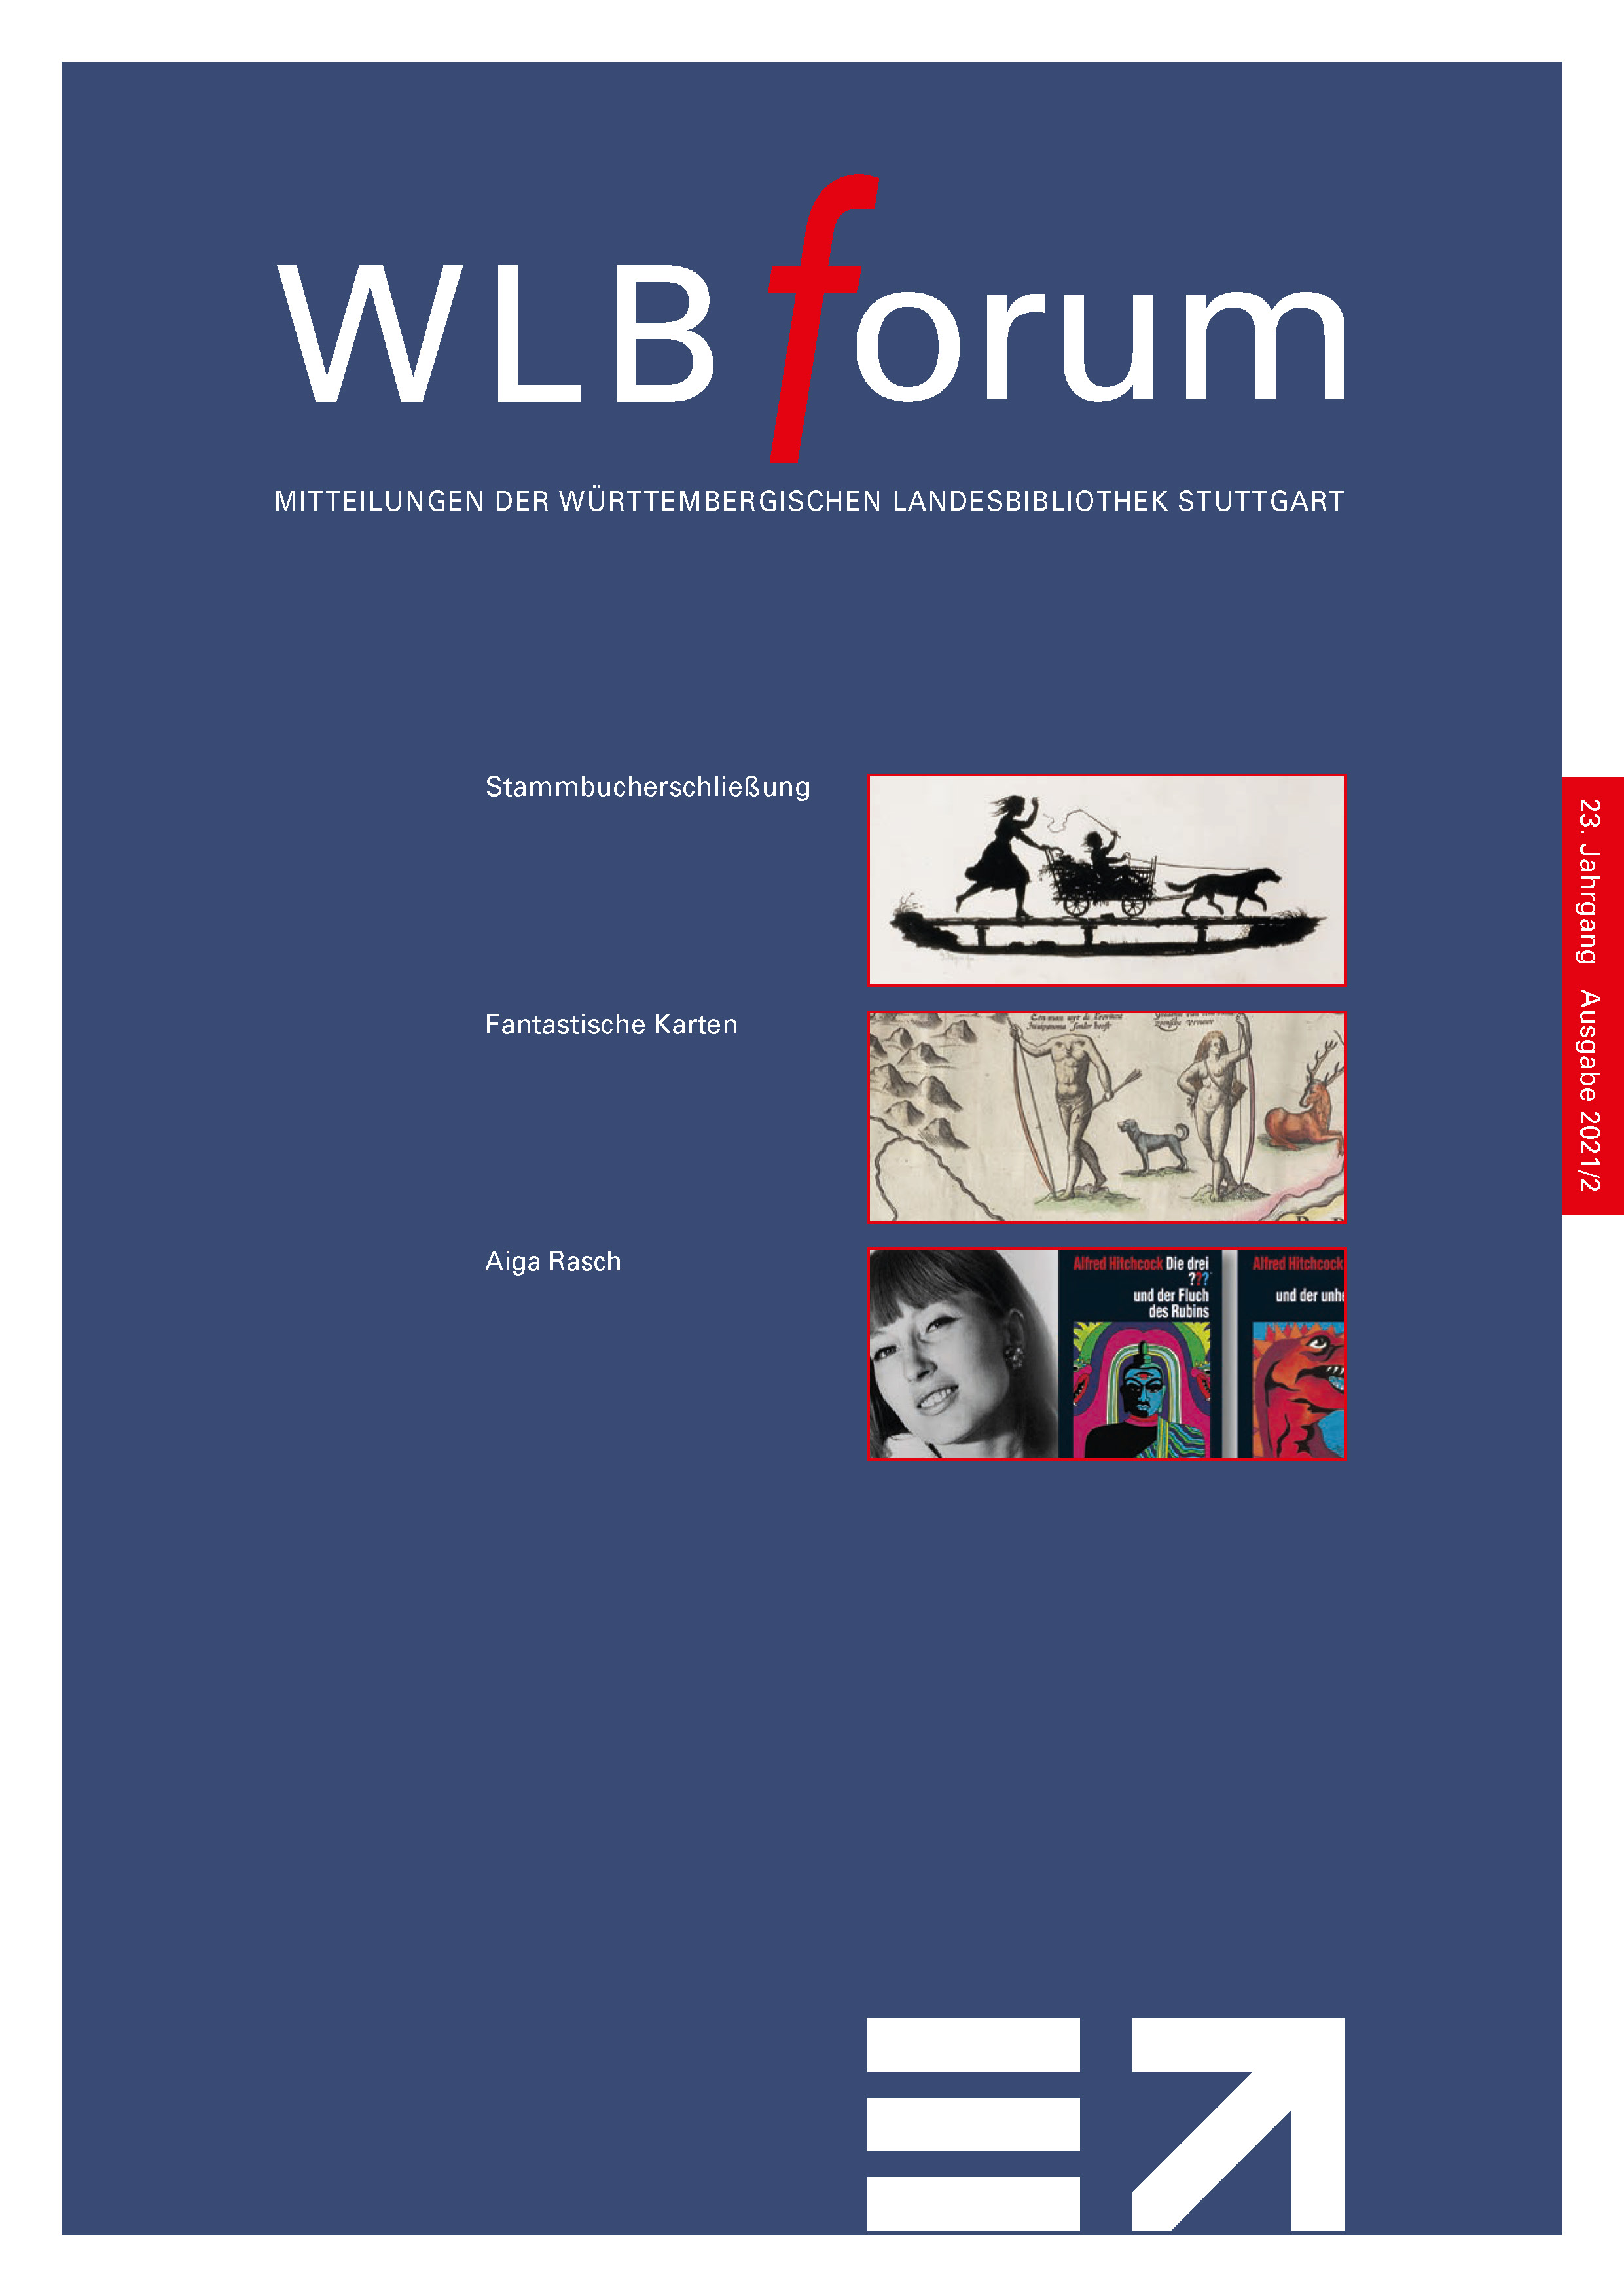 WLBforum Cover